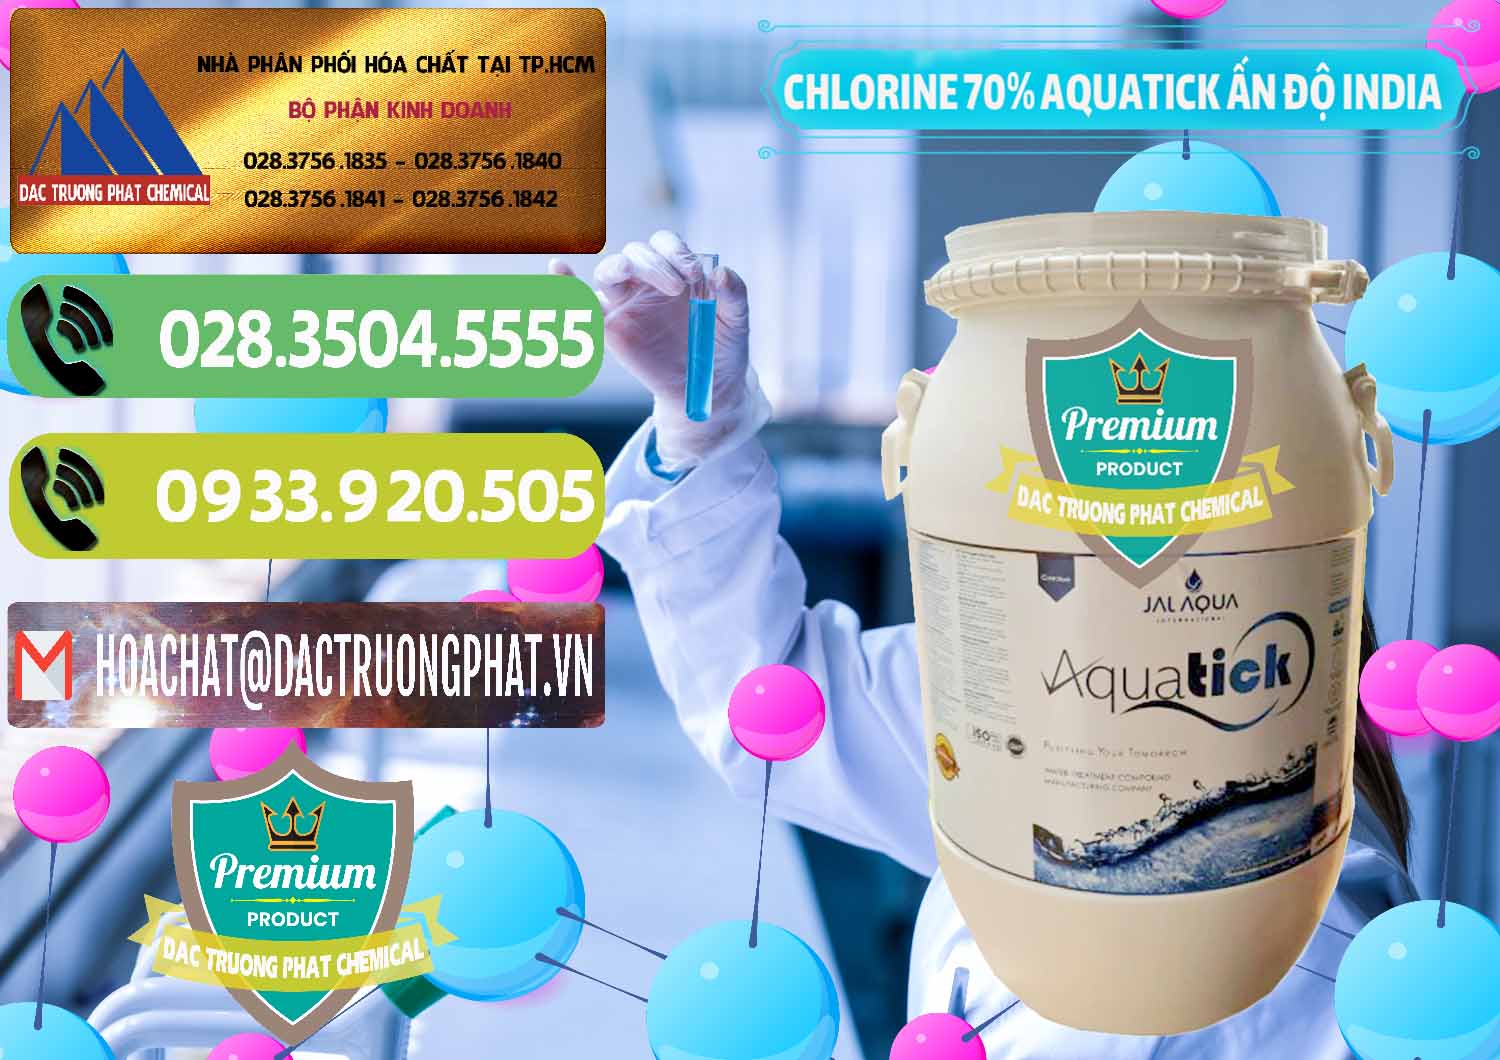 Đơn vị chuyên bán & phân phối Chlorine – Clorin 70% Aquatick Jal Aqua Ấn Độ India - 0215 - Nơi chuyên nhập khẩu _ cung cấp hóa chất tại TP.HCM - hoachatmientay.vn